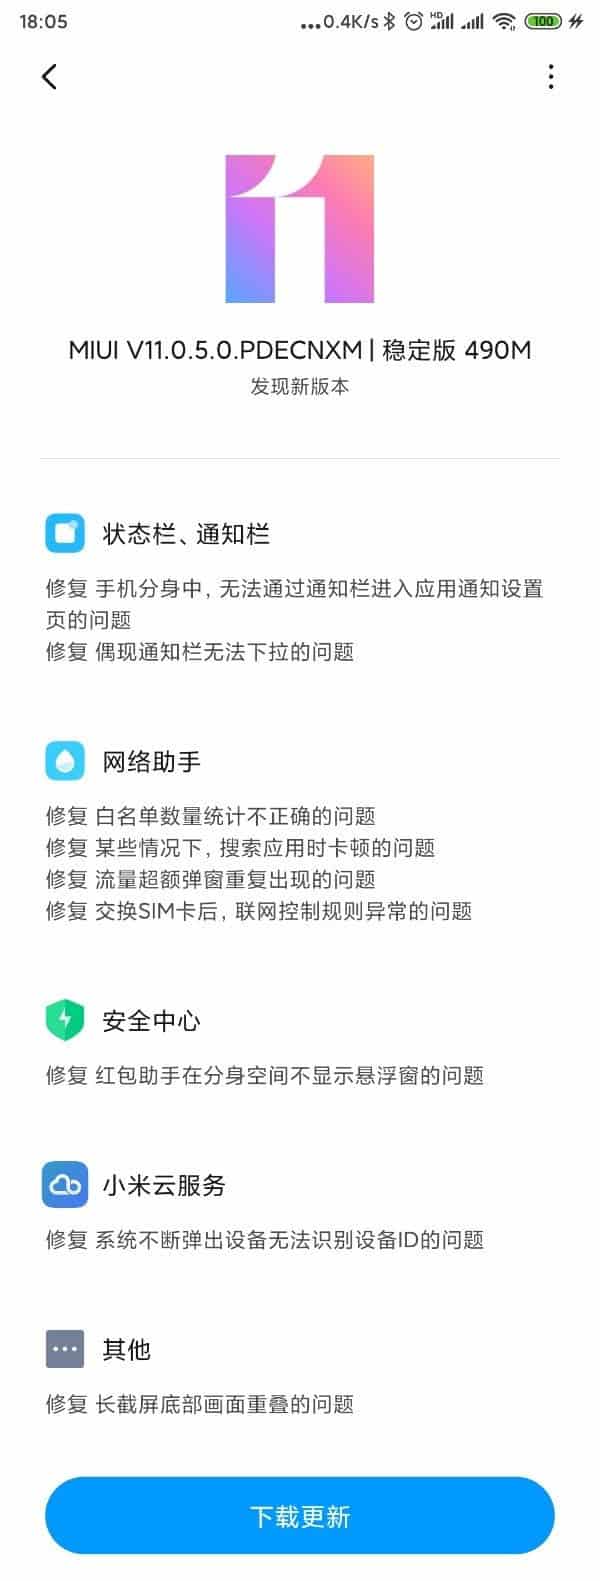 Xiaomi Mi MIX launches 11 stable update - Gizchina.com